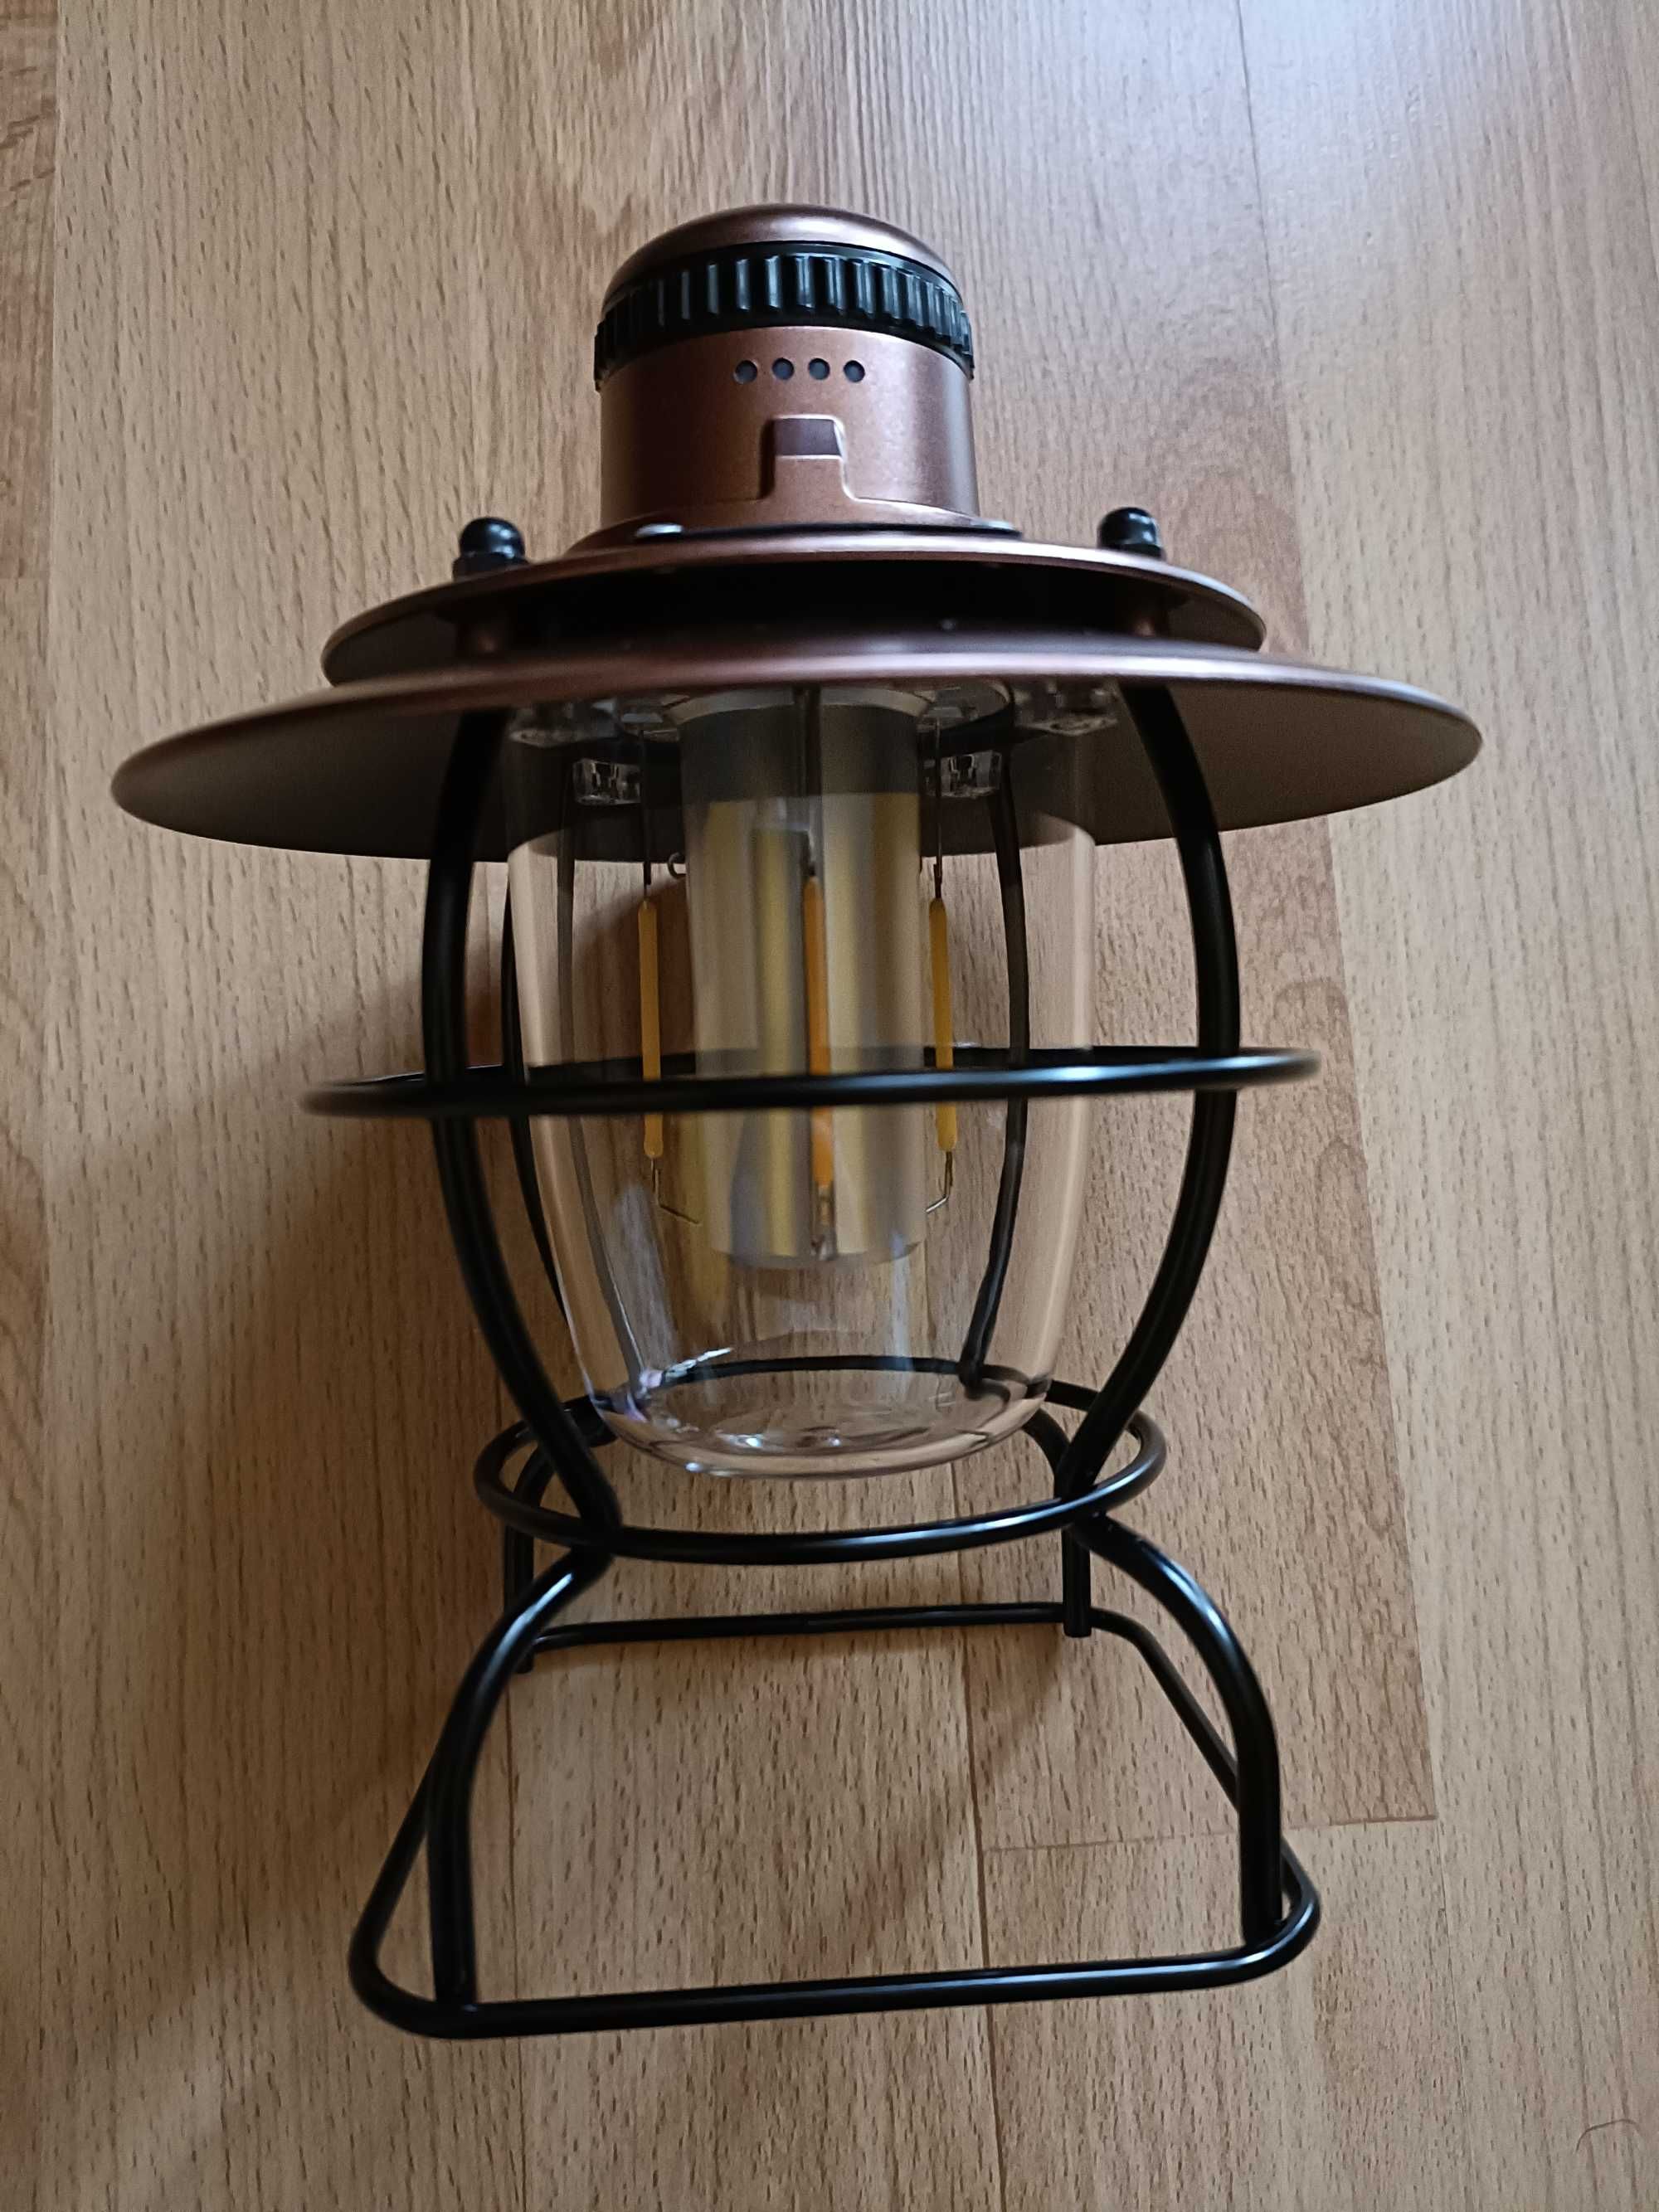 Przenośna ładowalna lampa kempingowa ze światłem retro